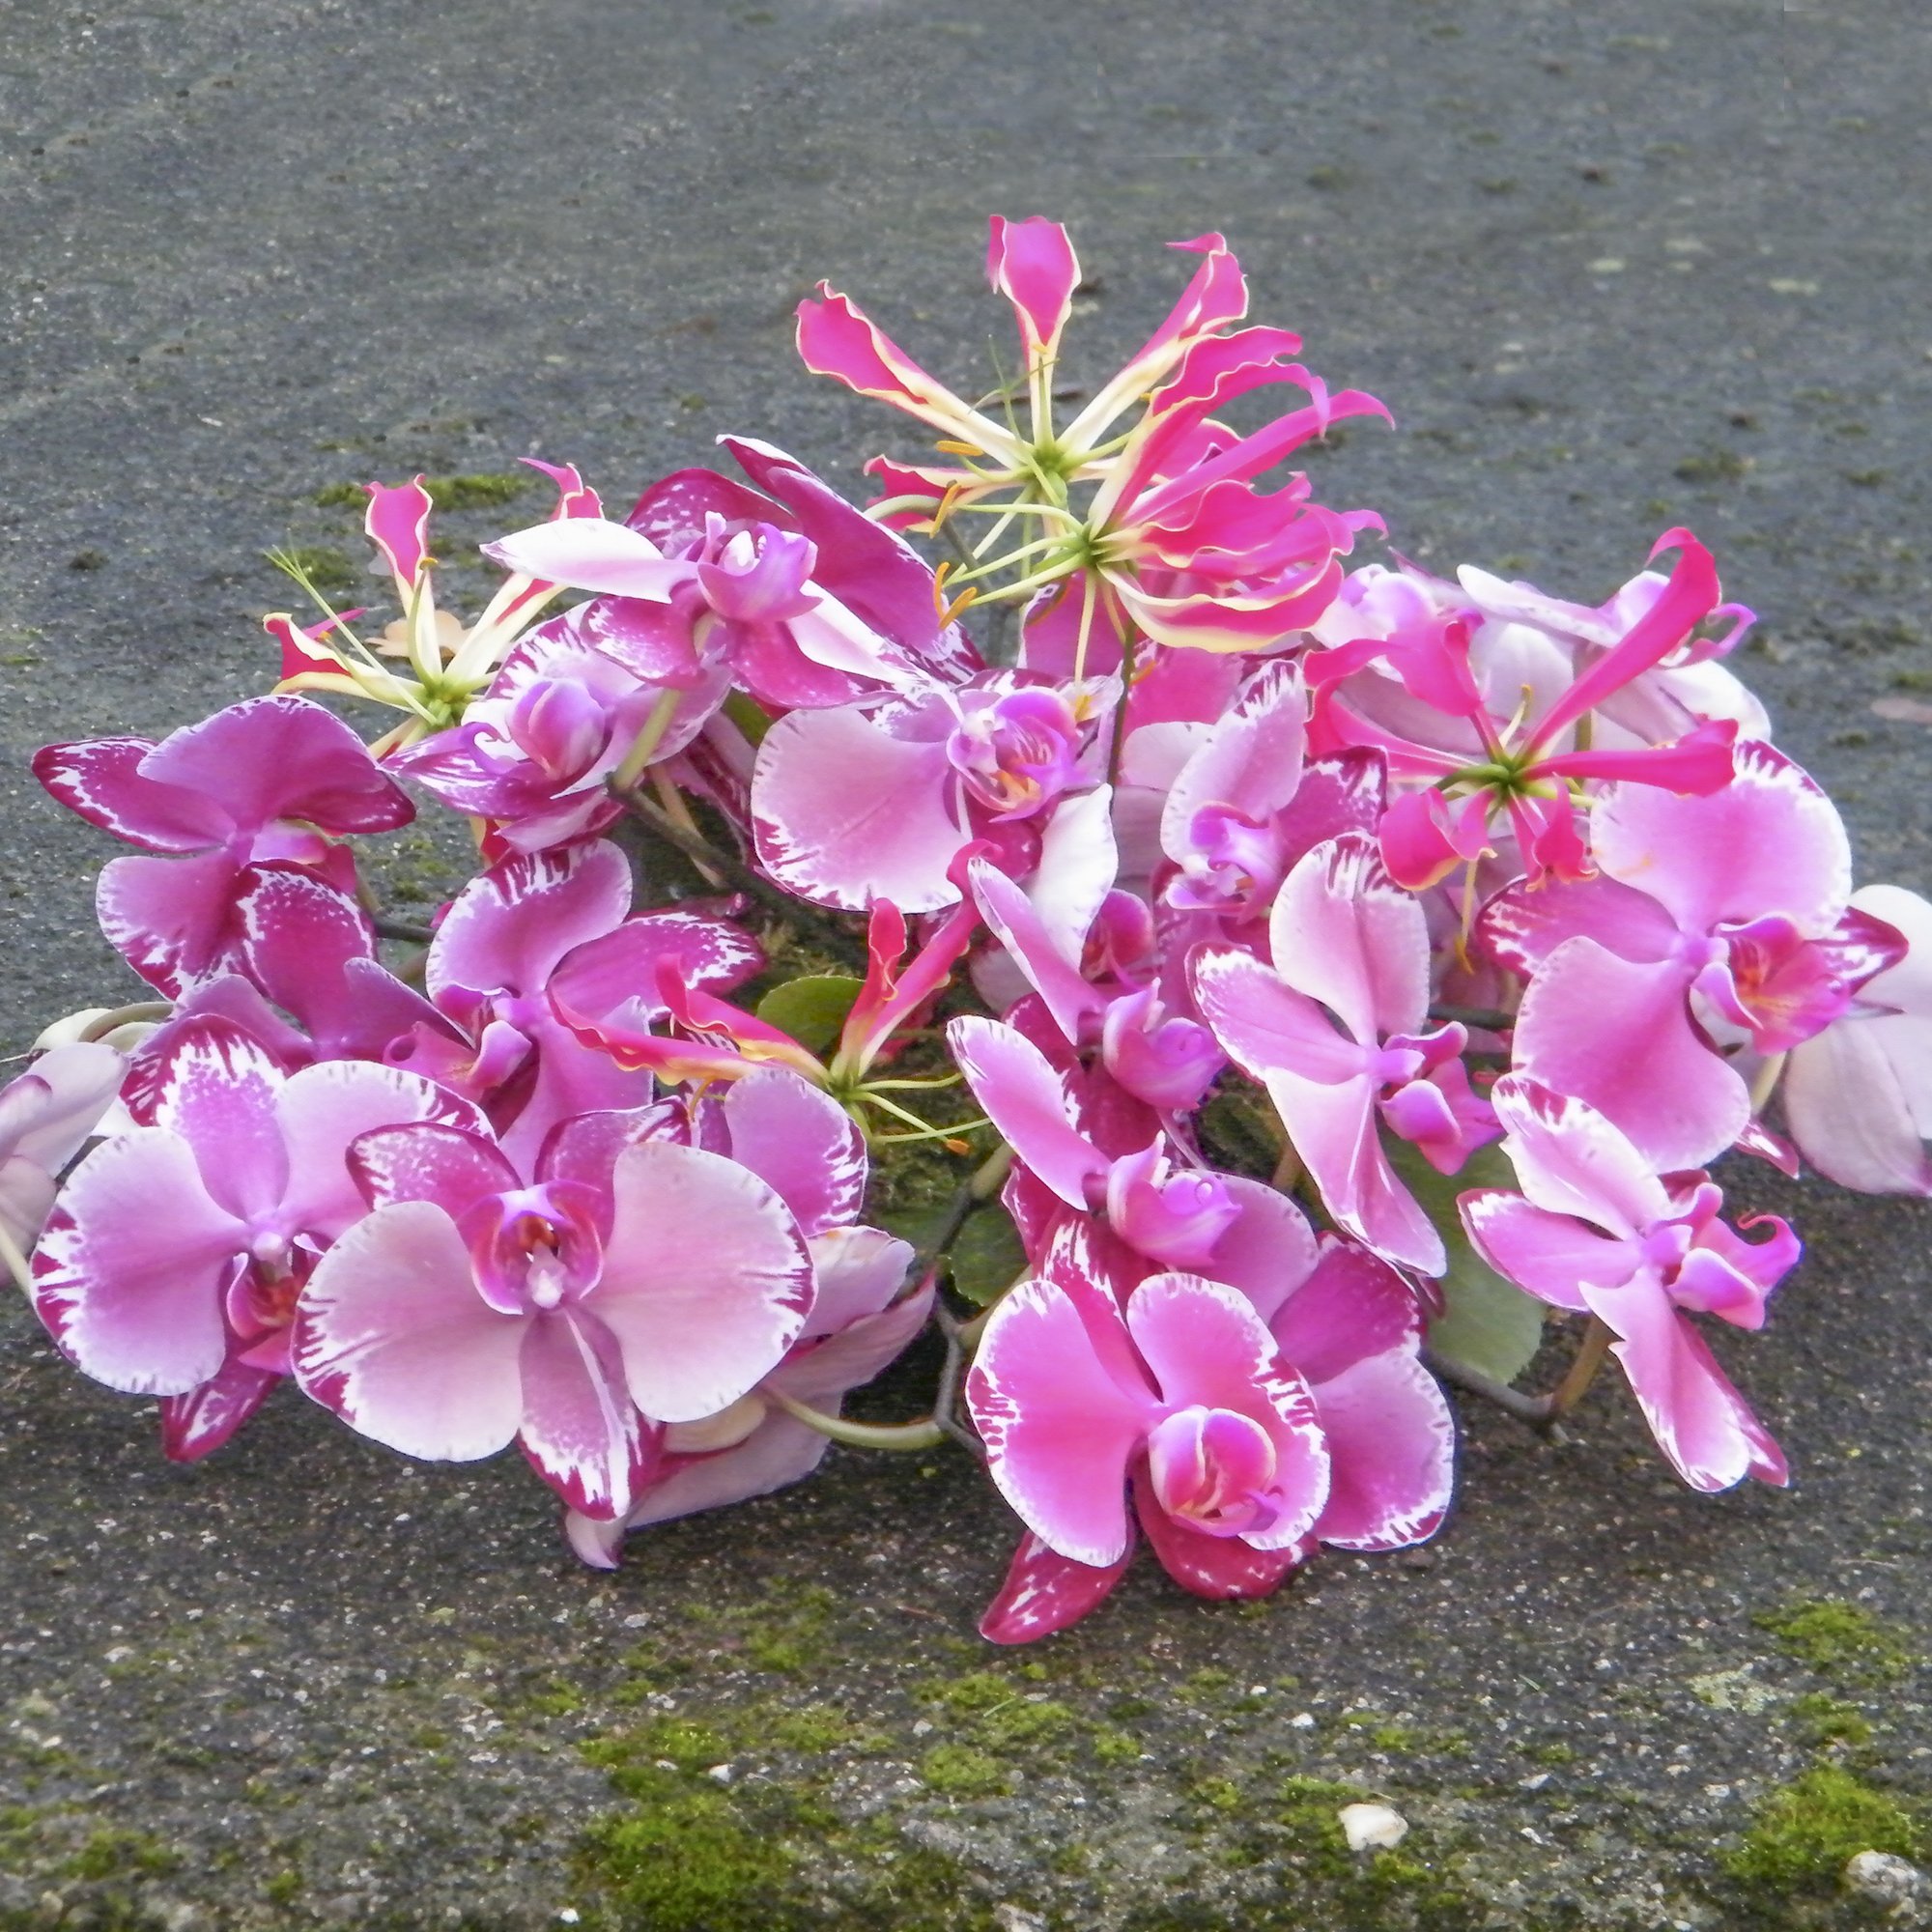 de Kracht van Bloemen- bloemen bij overlijden- afscheidsbloemen  26.jpg